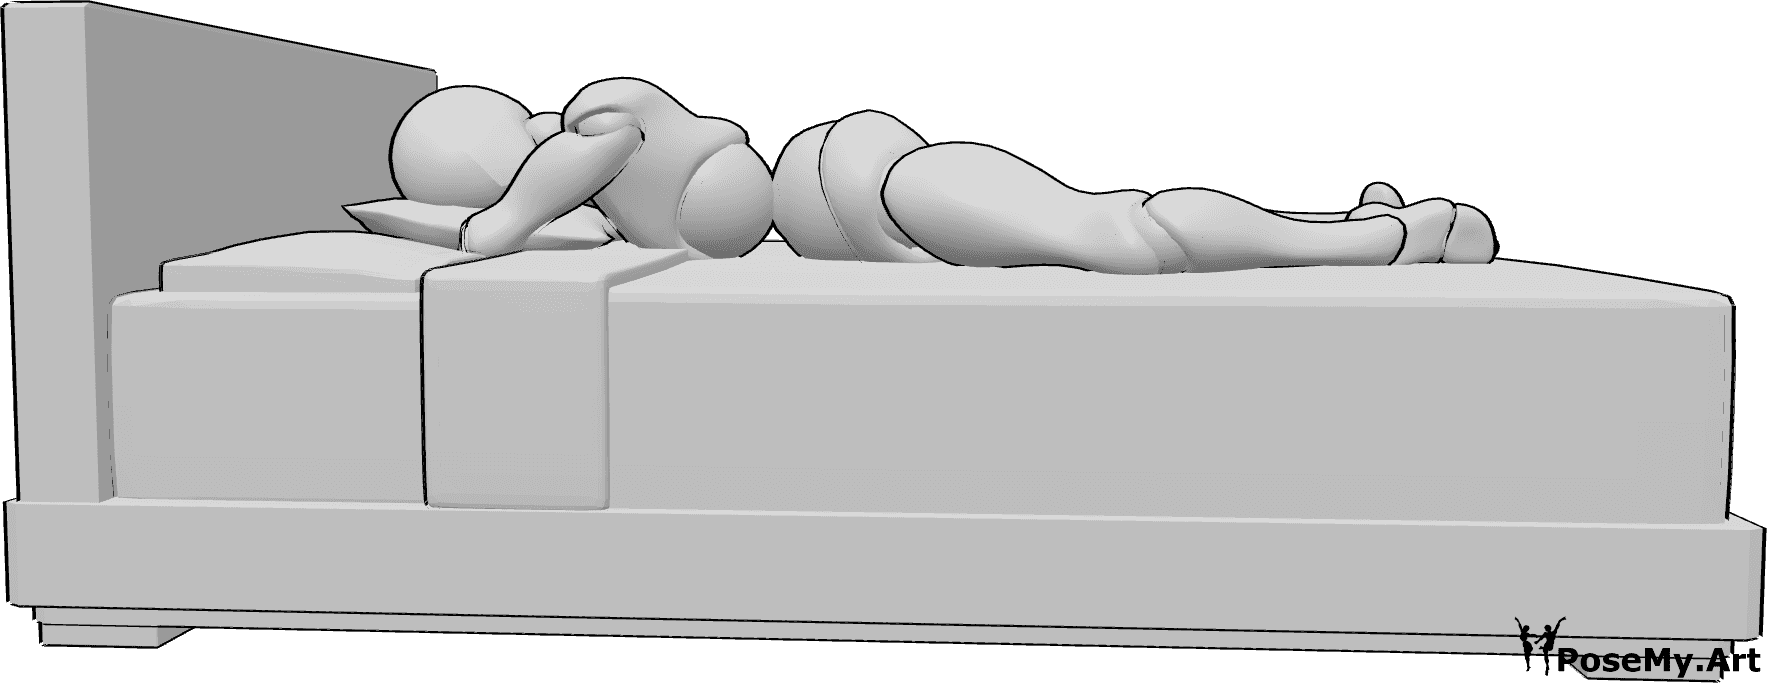 Referencia de poses- Mujer tumbada en la cama - Mujer tumbada en la cama, boca abajo, apoyando la cabeza en una almohada.